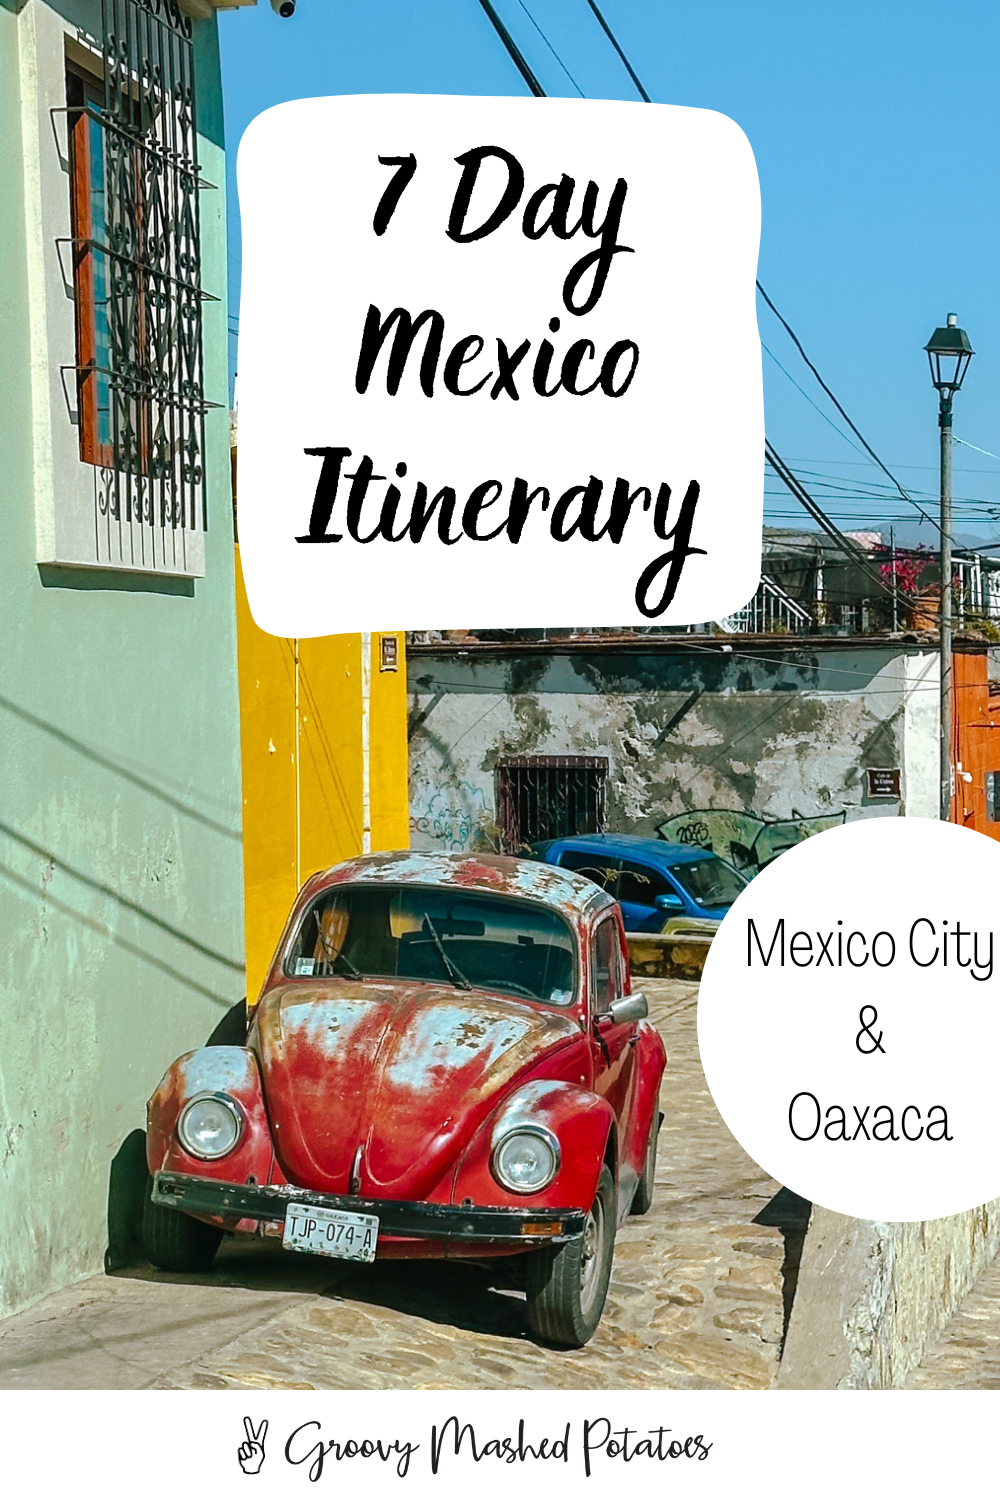 7 Day Mexico Itinerary - Mexico City and Oaxaca